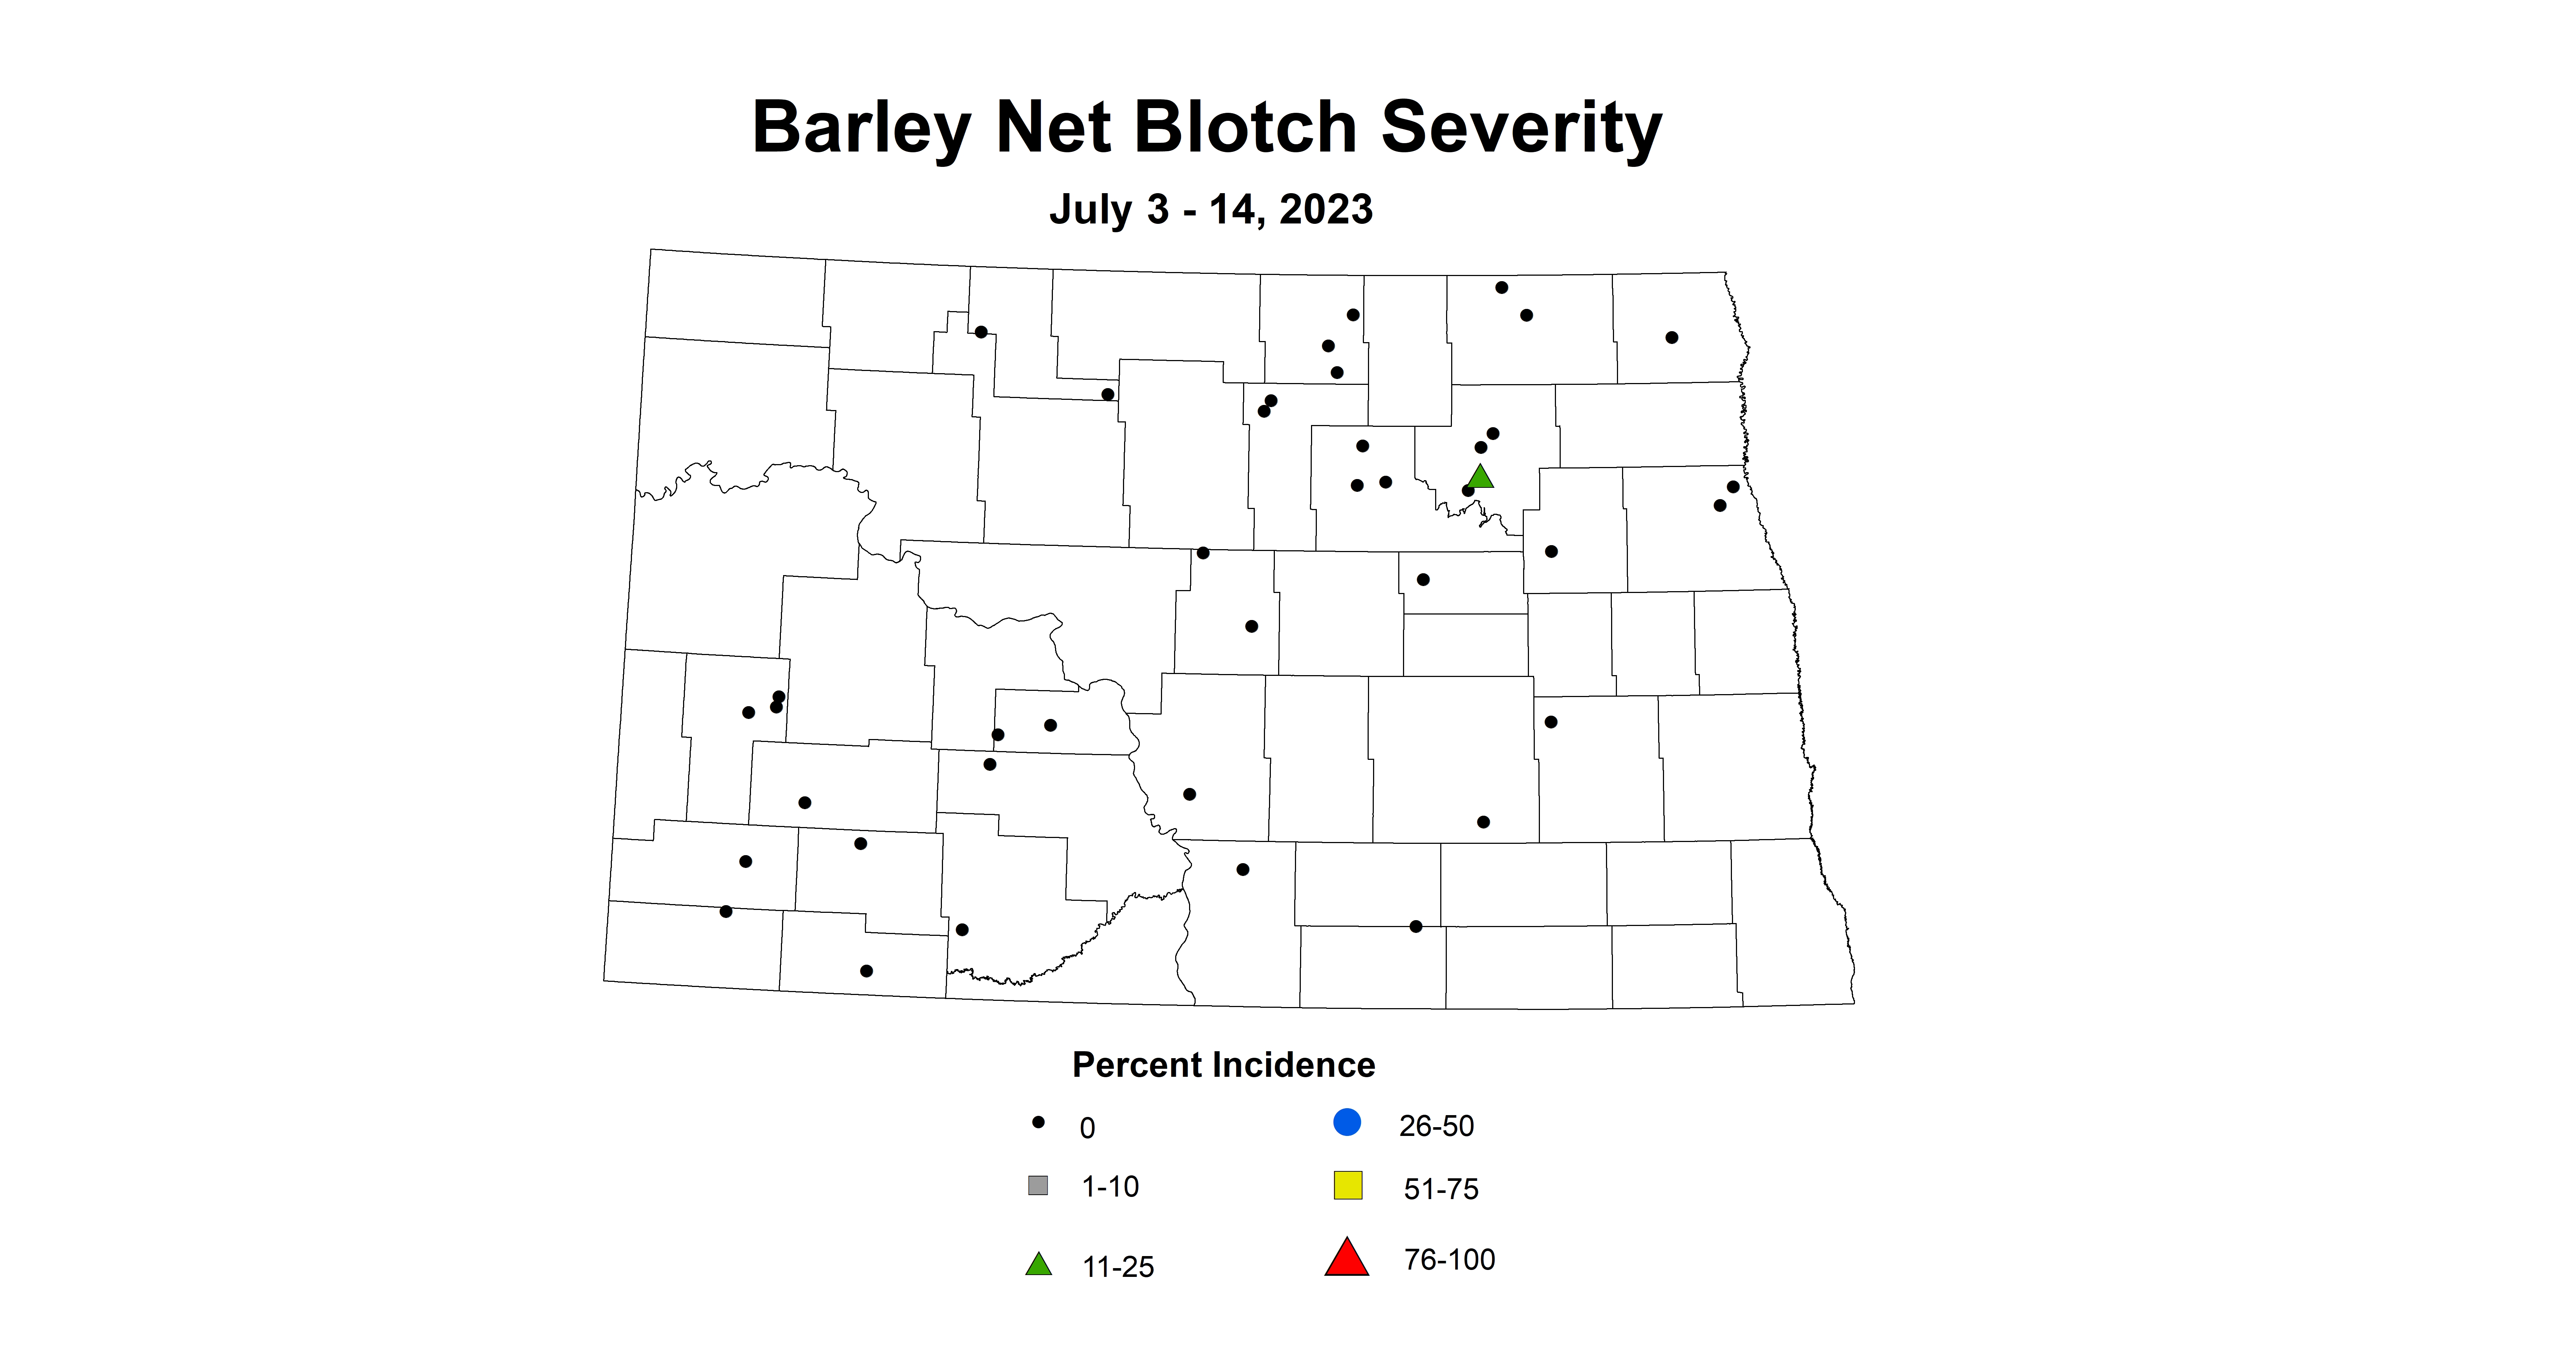 barley net blotch severity July 3-14 2023